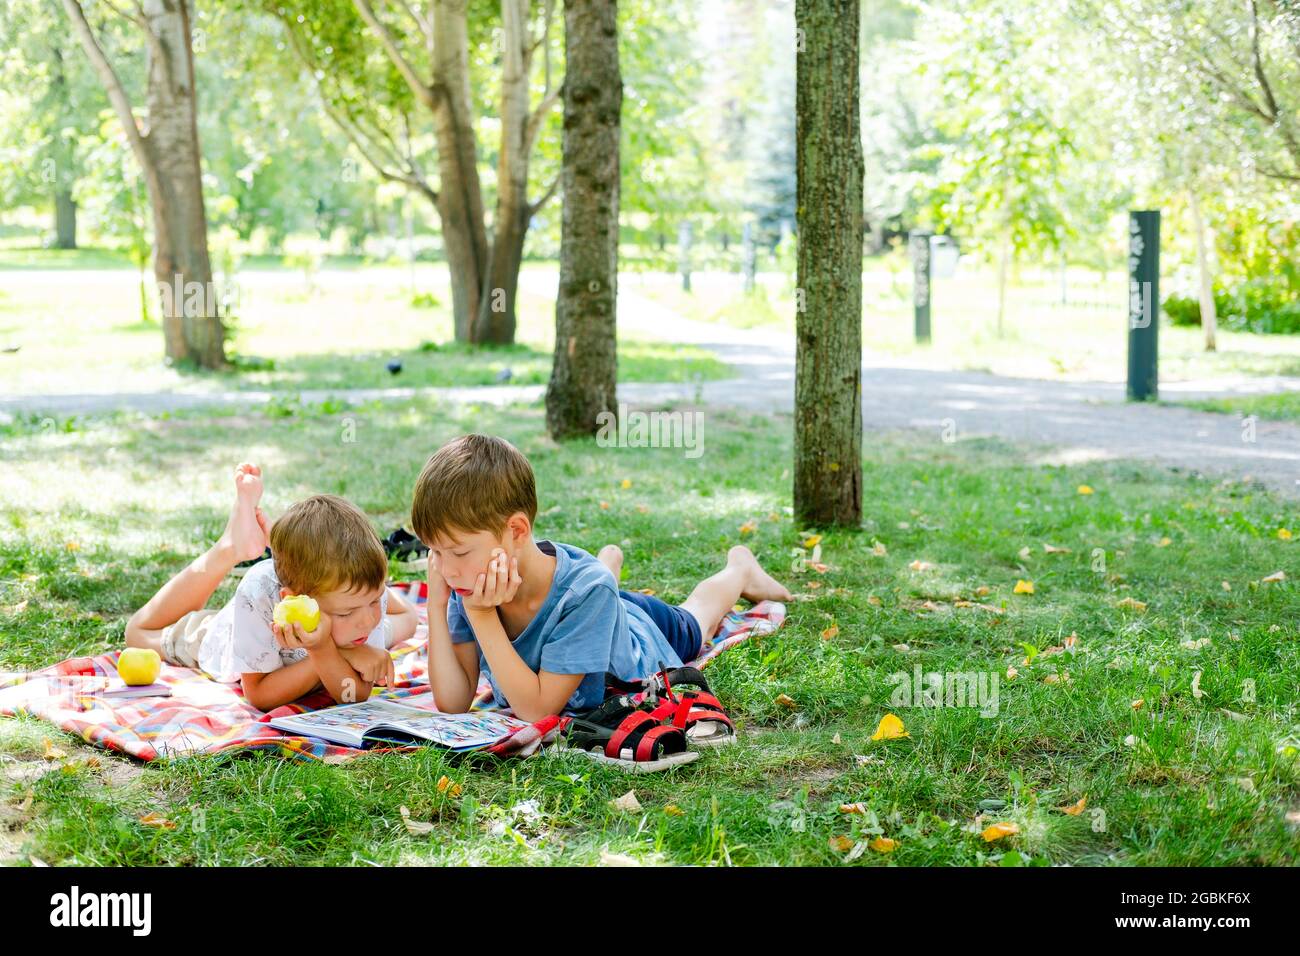 Due ragazzi si stendono su una coperta in un parco verde. I bambini leggono un libro sdraiato a terra, nel parco. Bambini in un pic-nic in estate, la lettura di libri. S Foto Stock